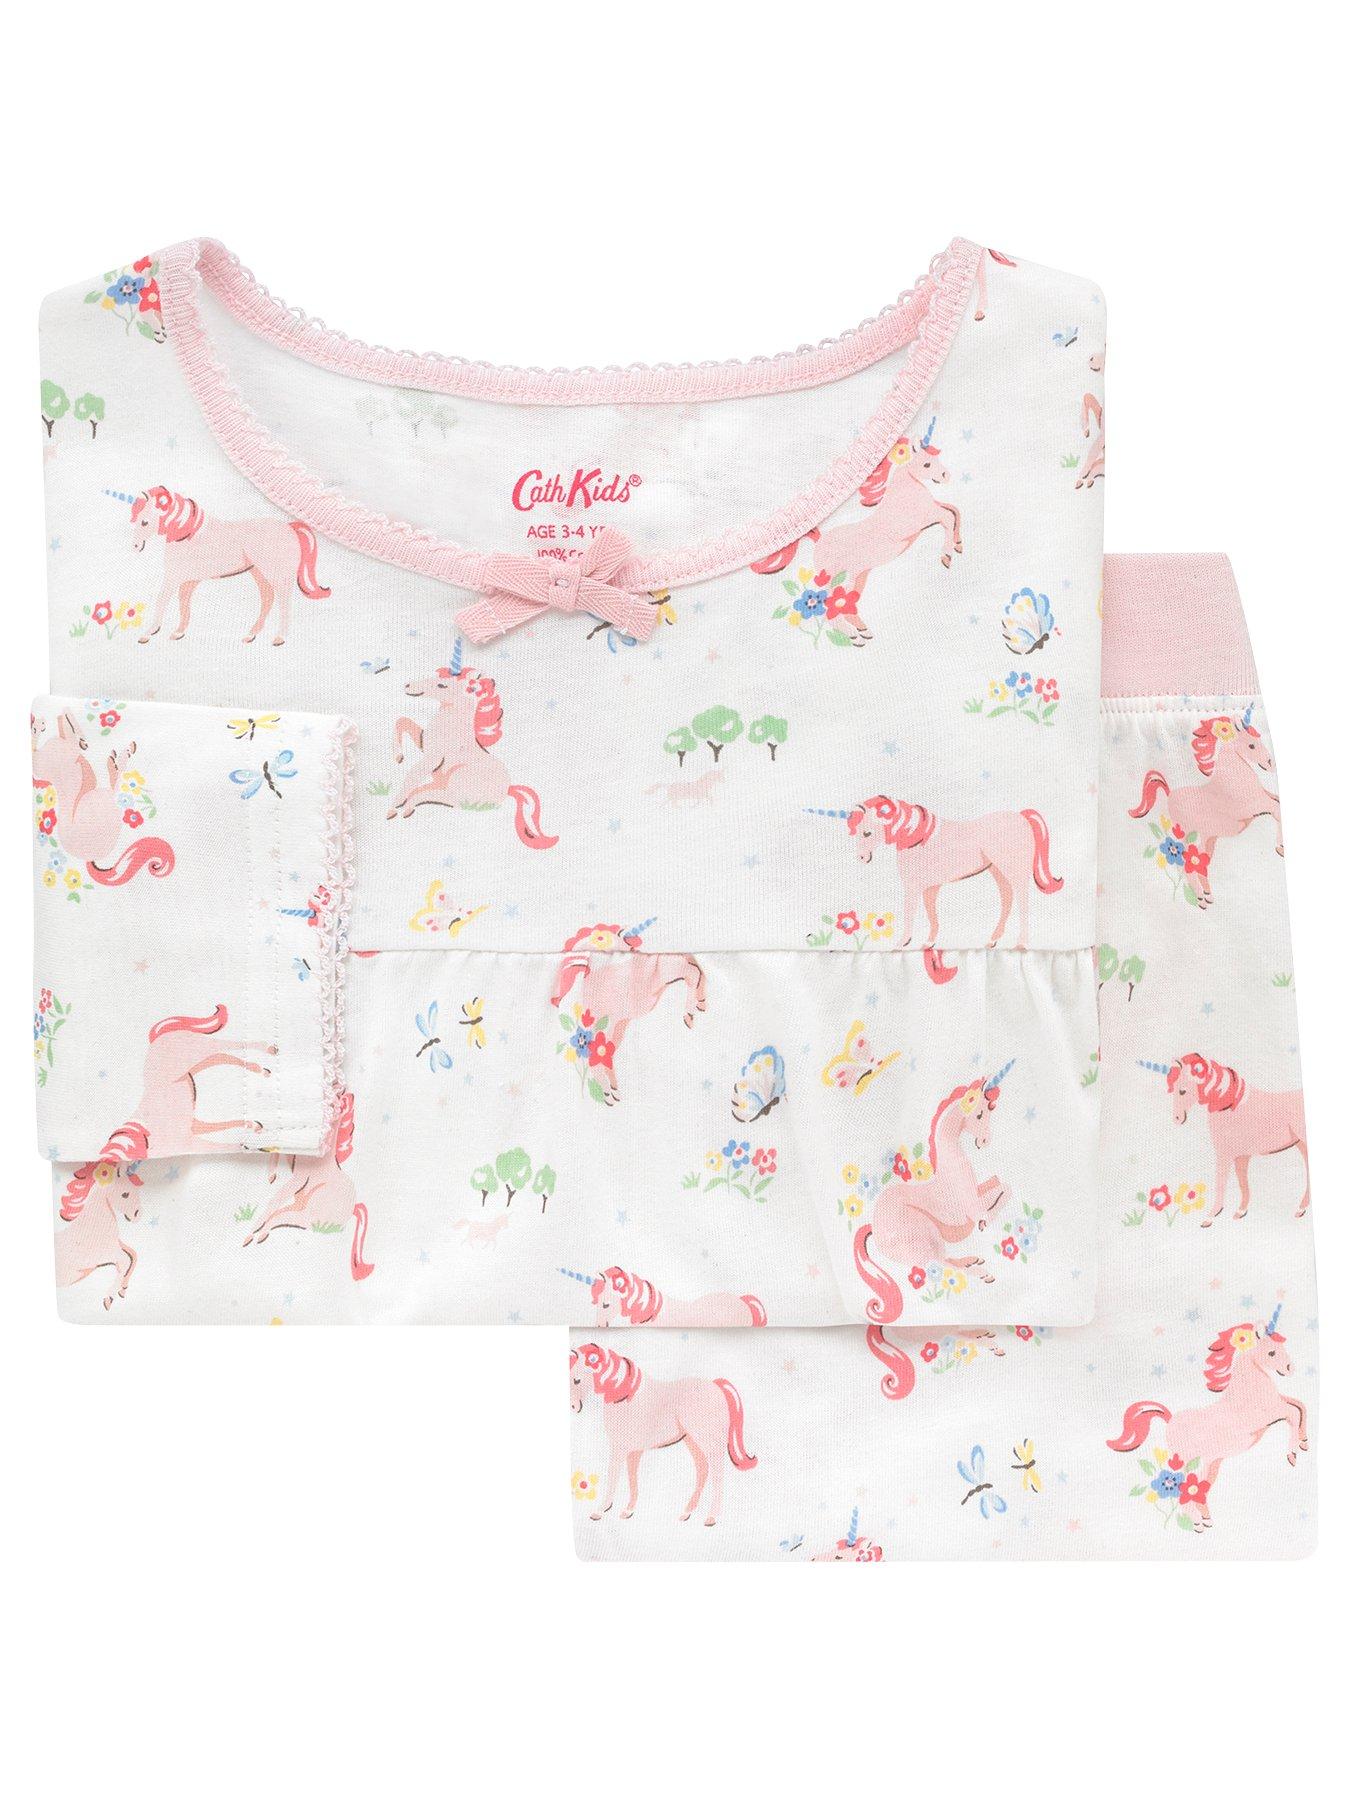 cath kidston unicorn pyjamas